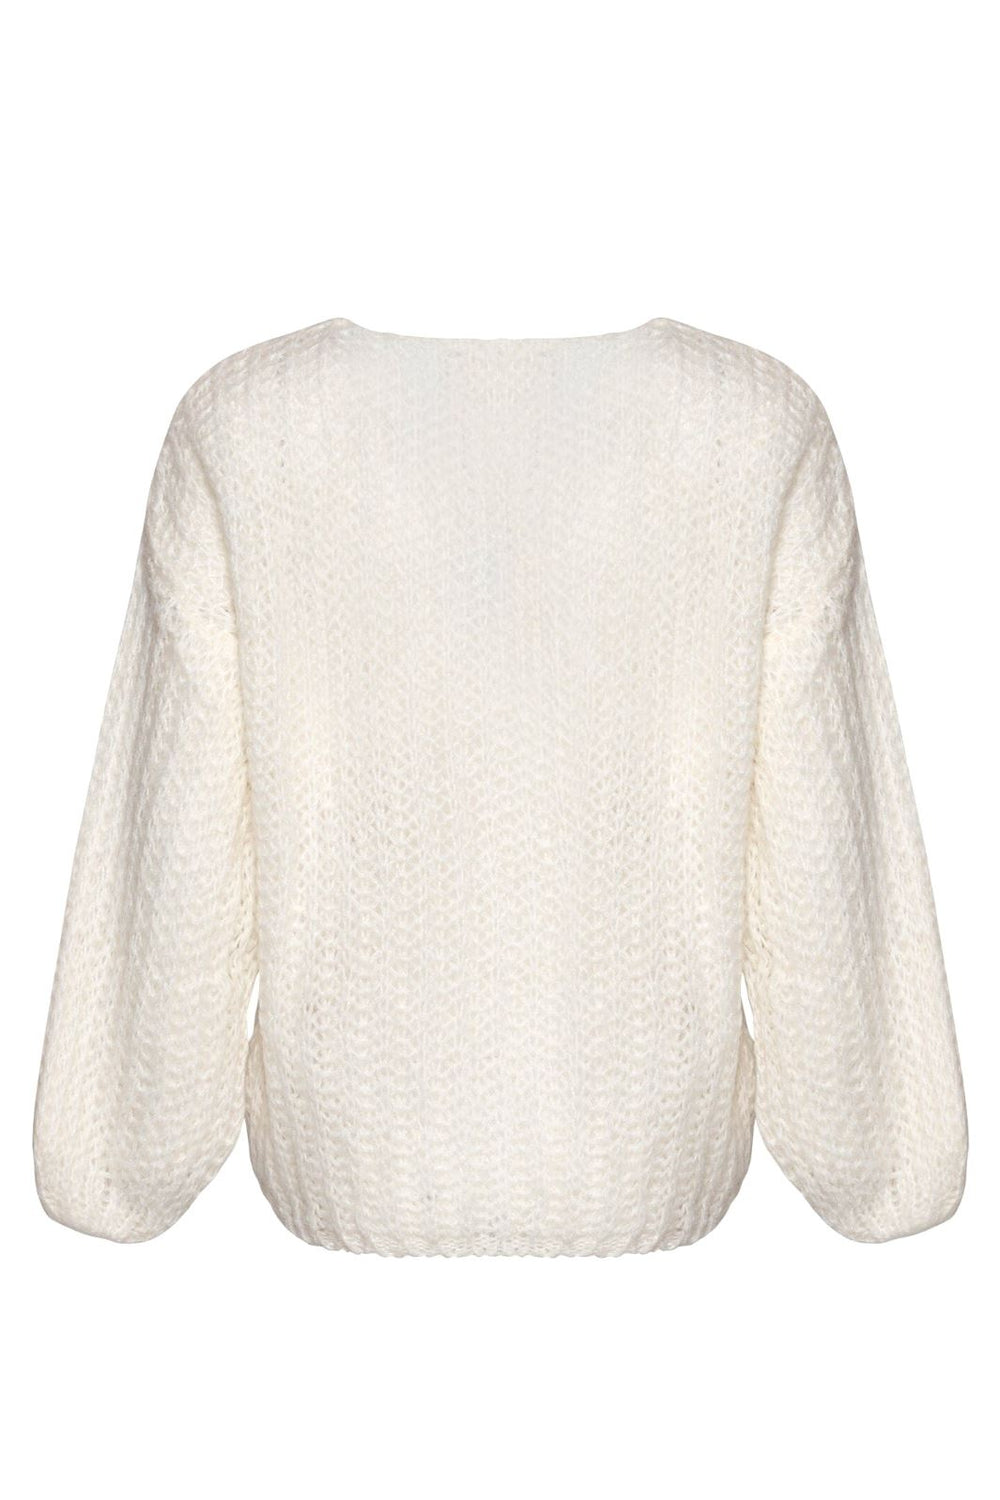 Noella - Joseph Knit Sweater - 028 White Strikbluser 